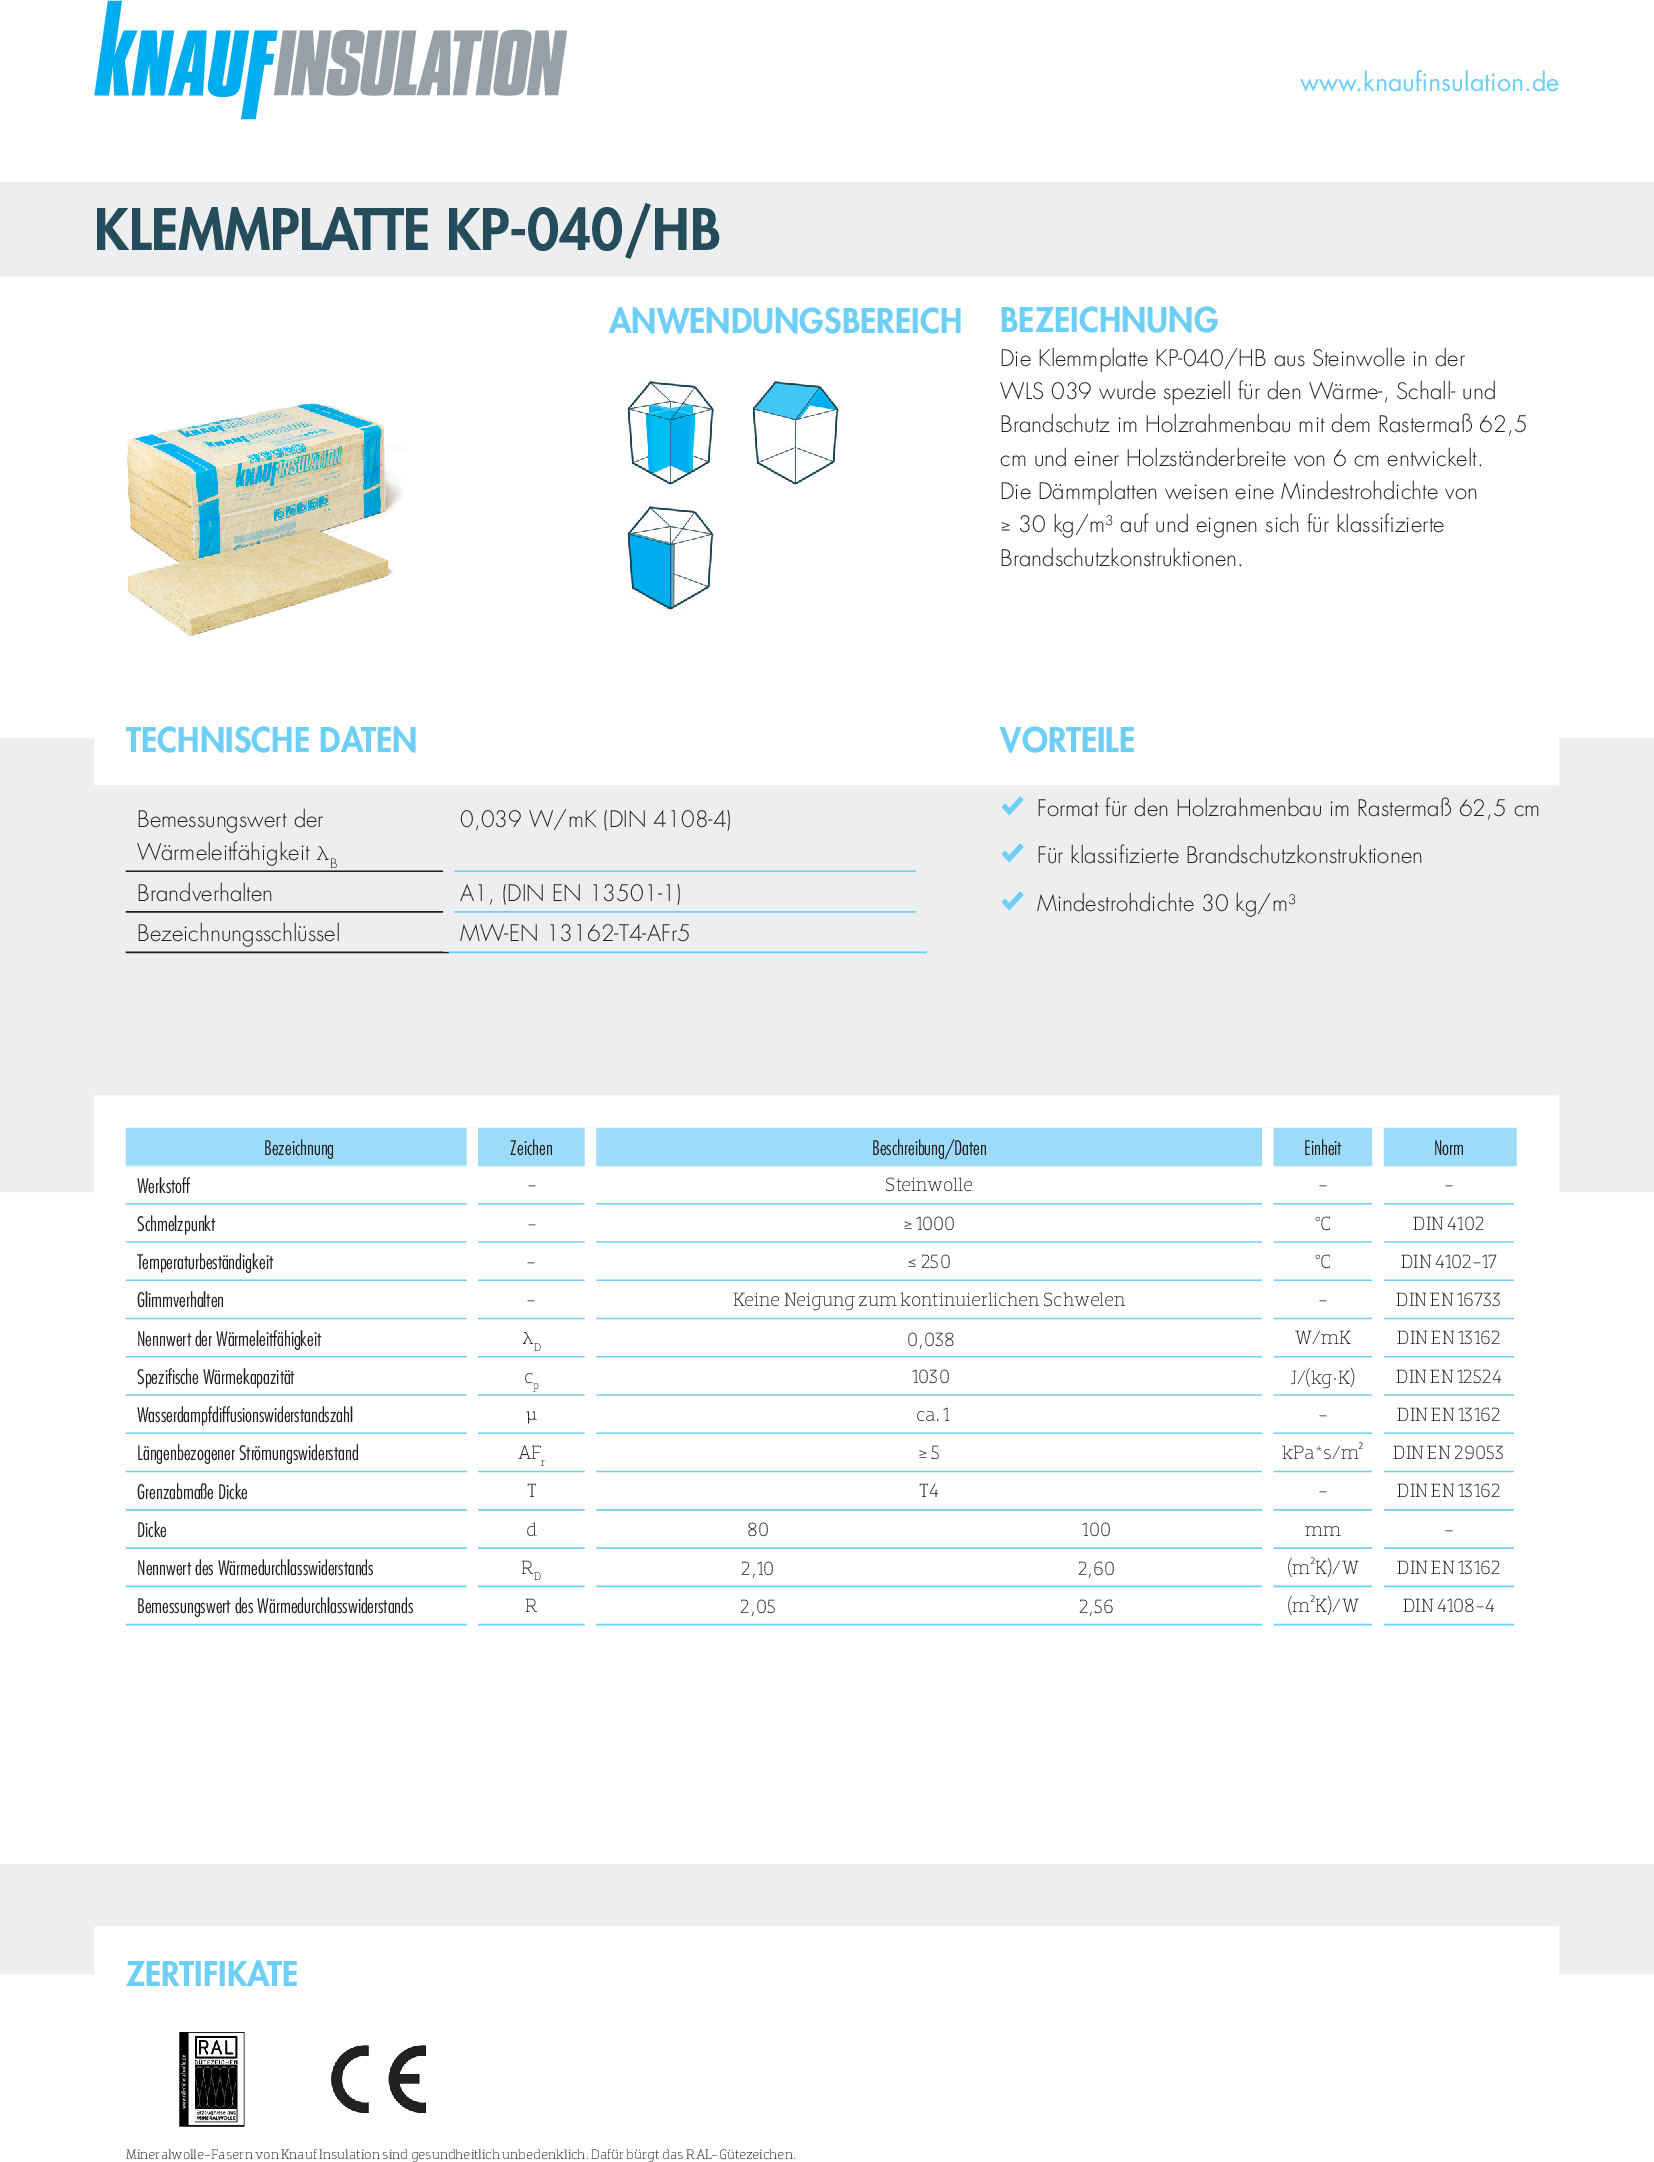 Datenblatt Knauf Insulation Klemmplatte KP-040/HB